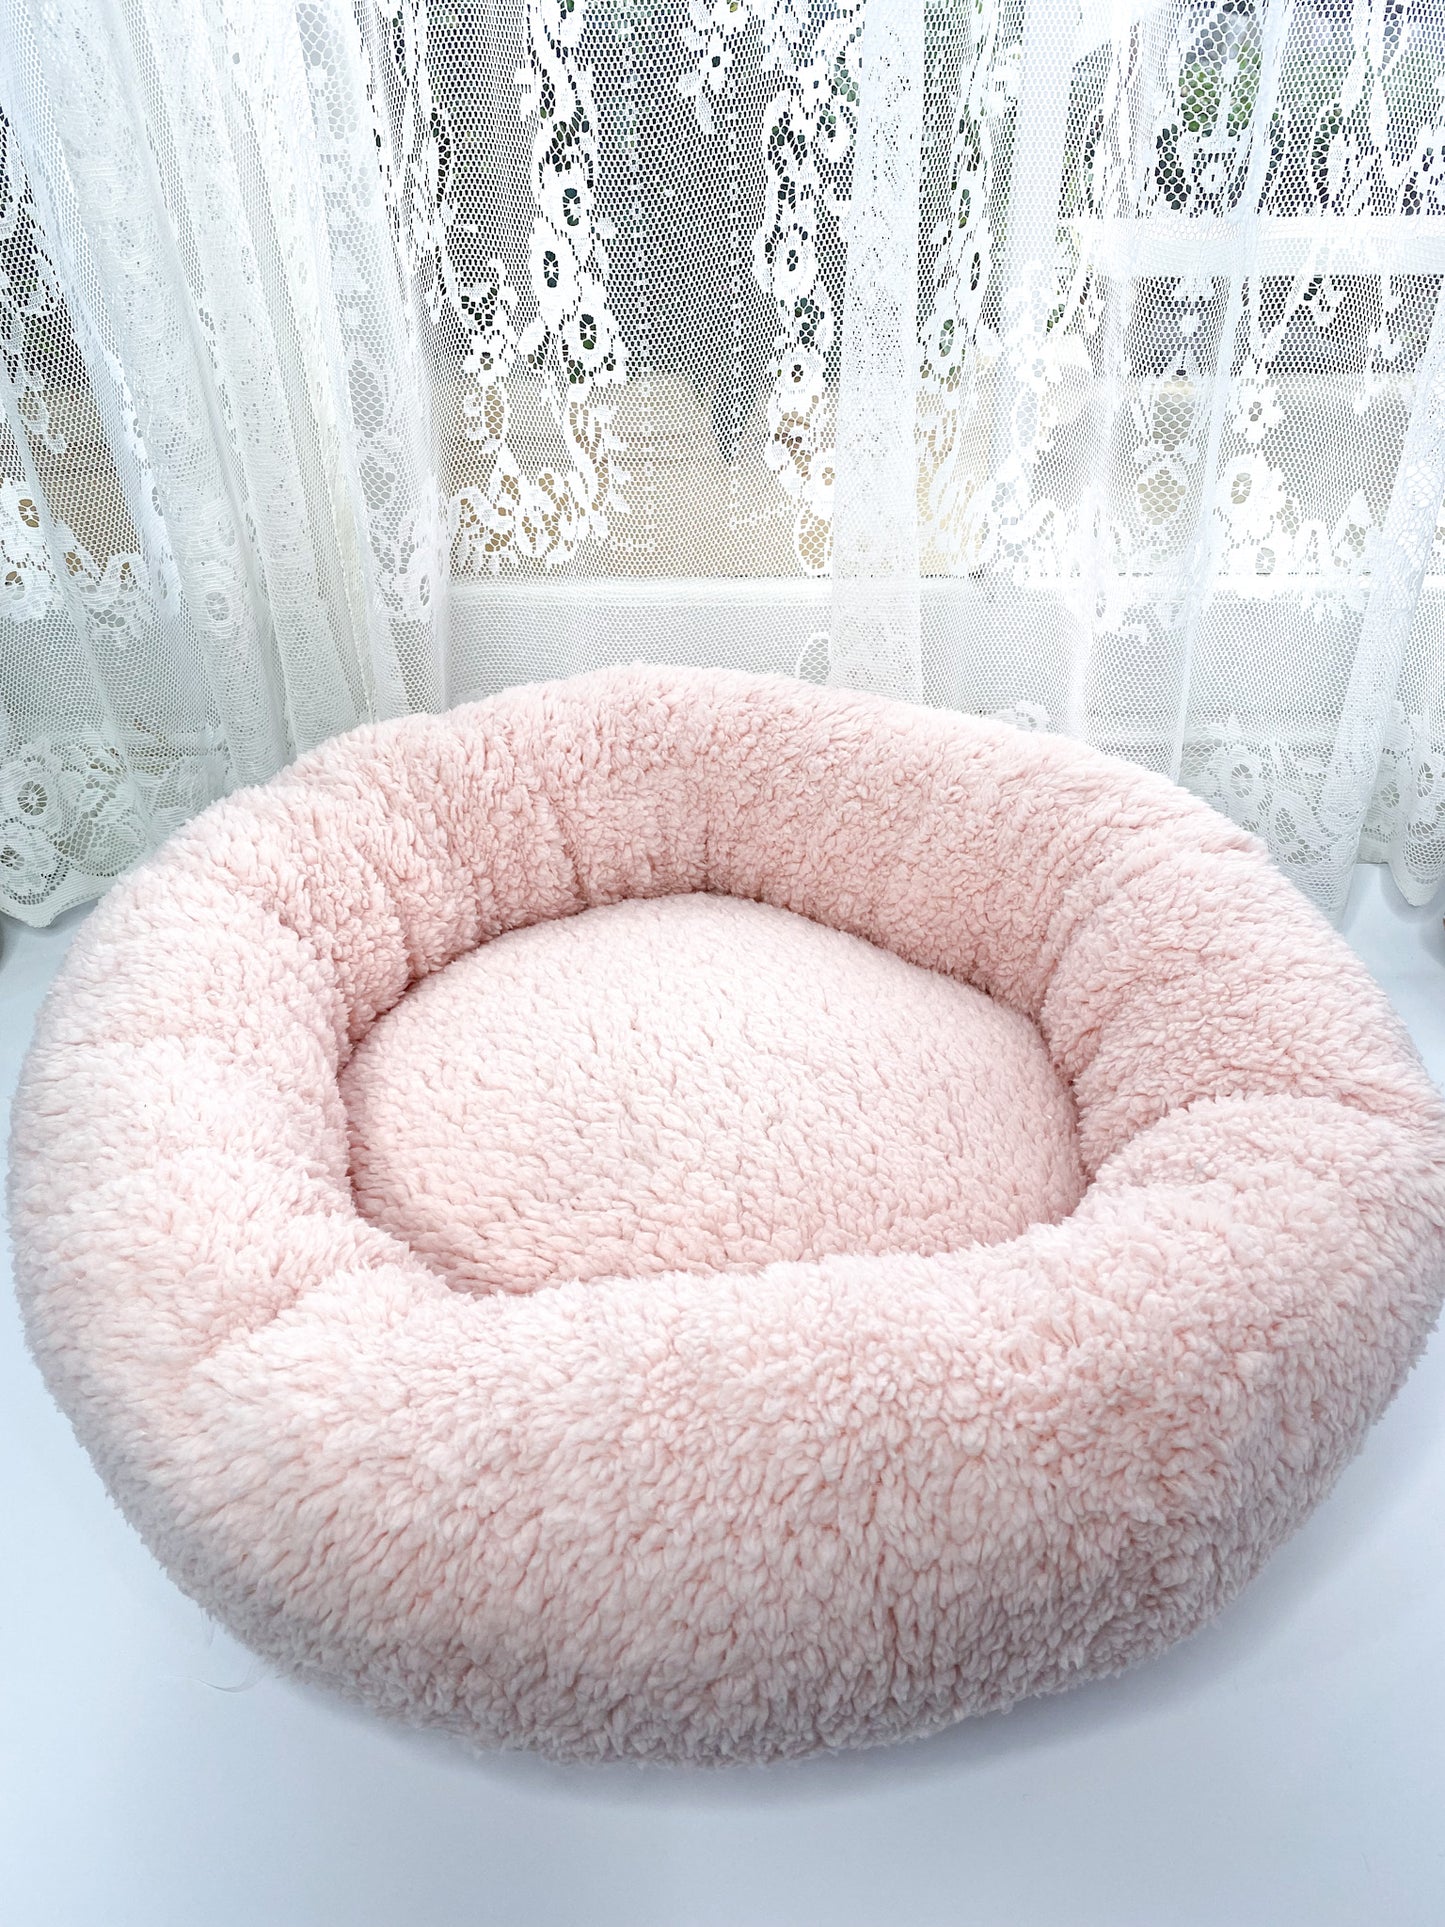 Round Cozy Pink Dog Bed